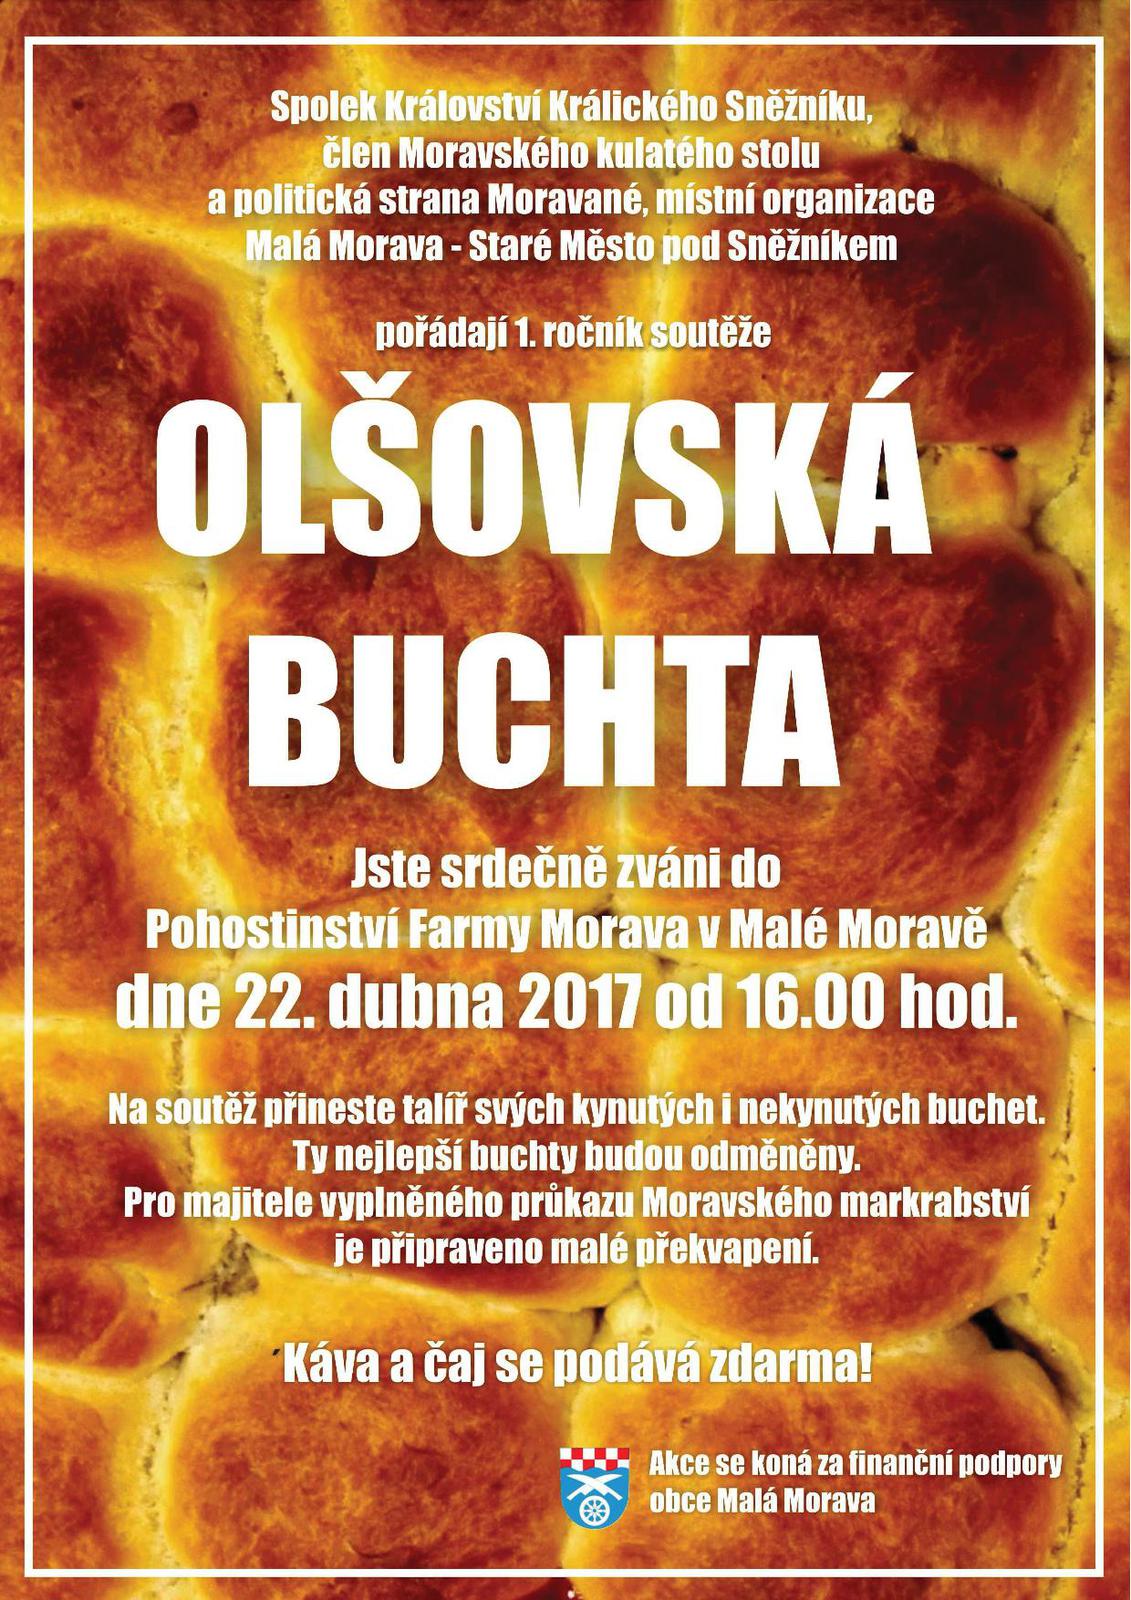 Olsovska buchta 2017.jpg